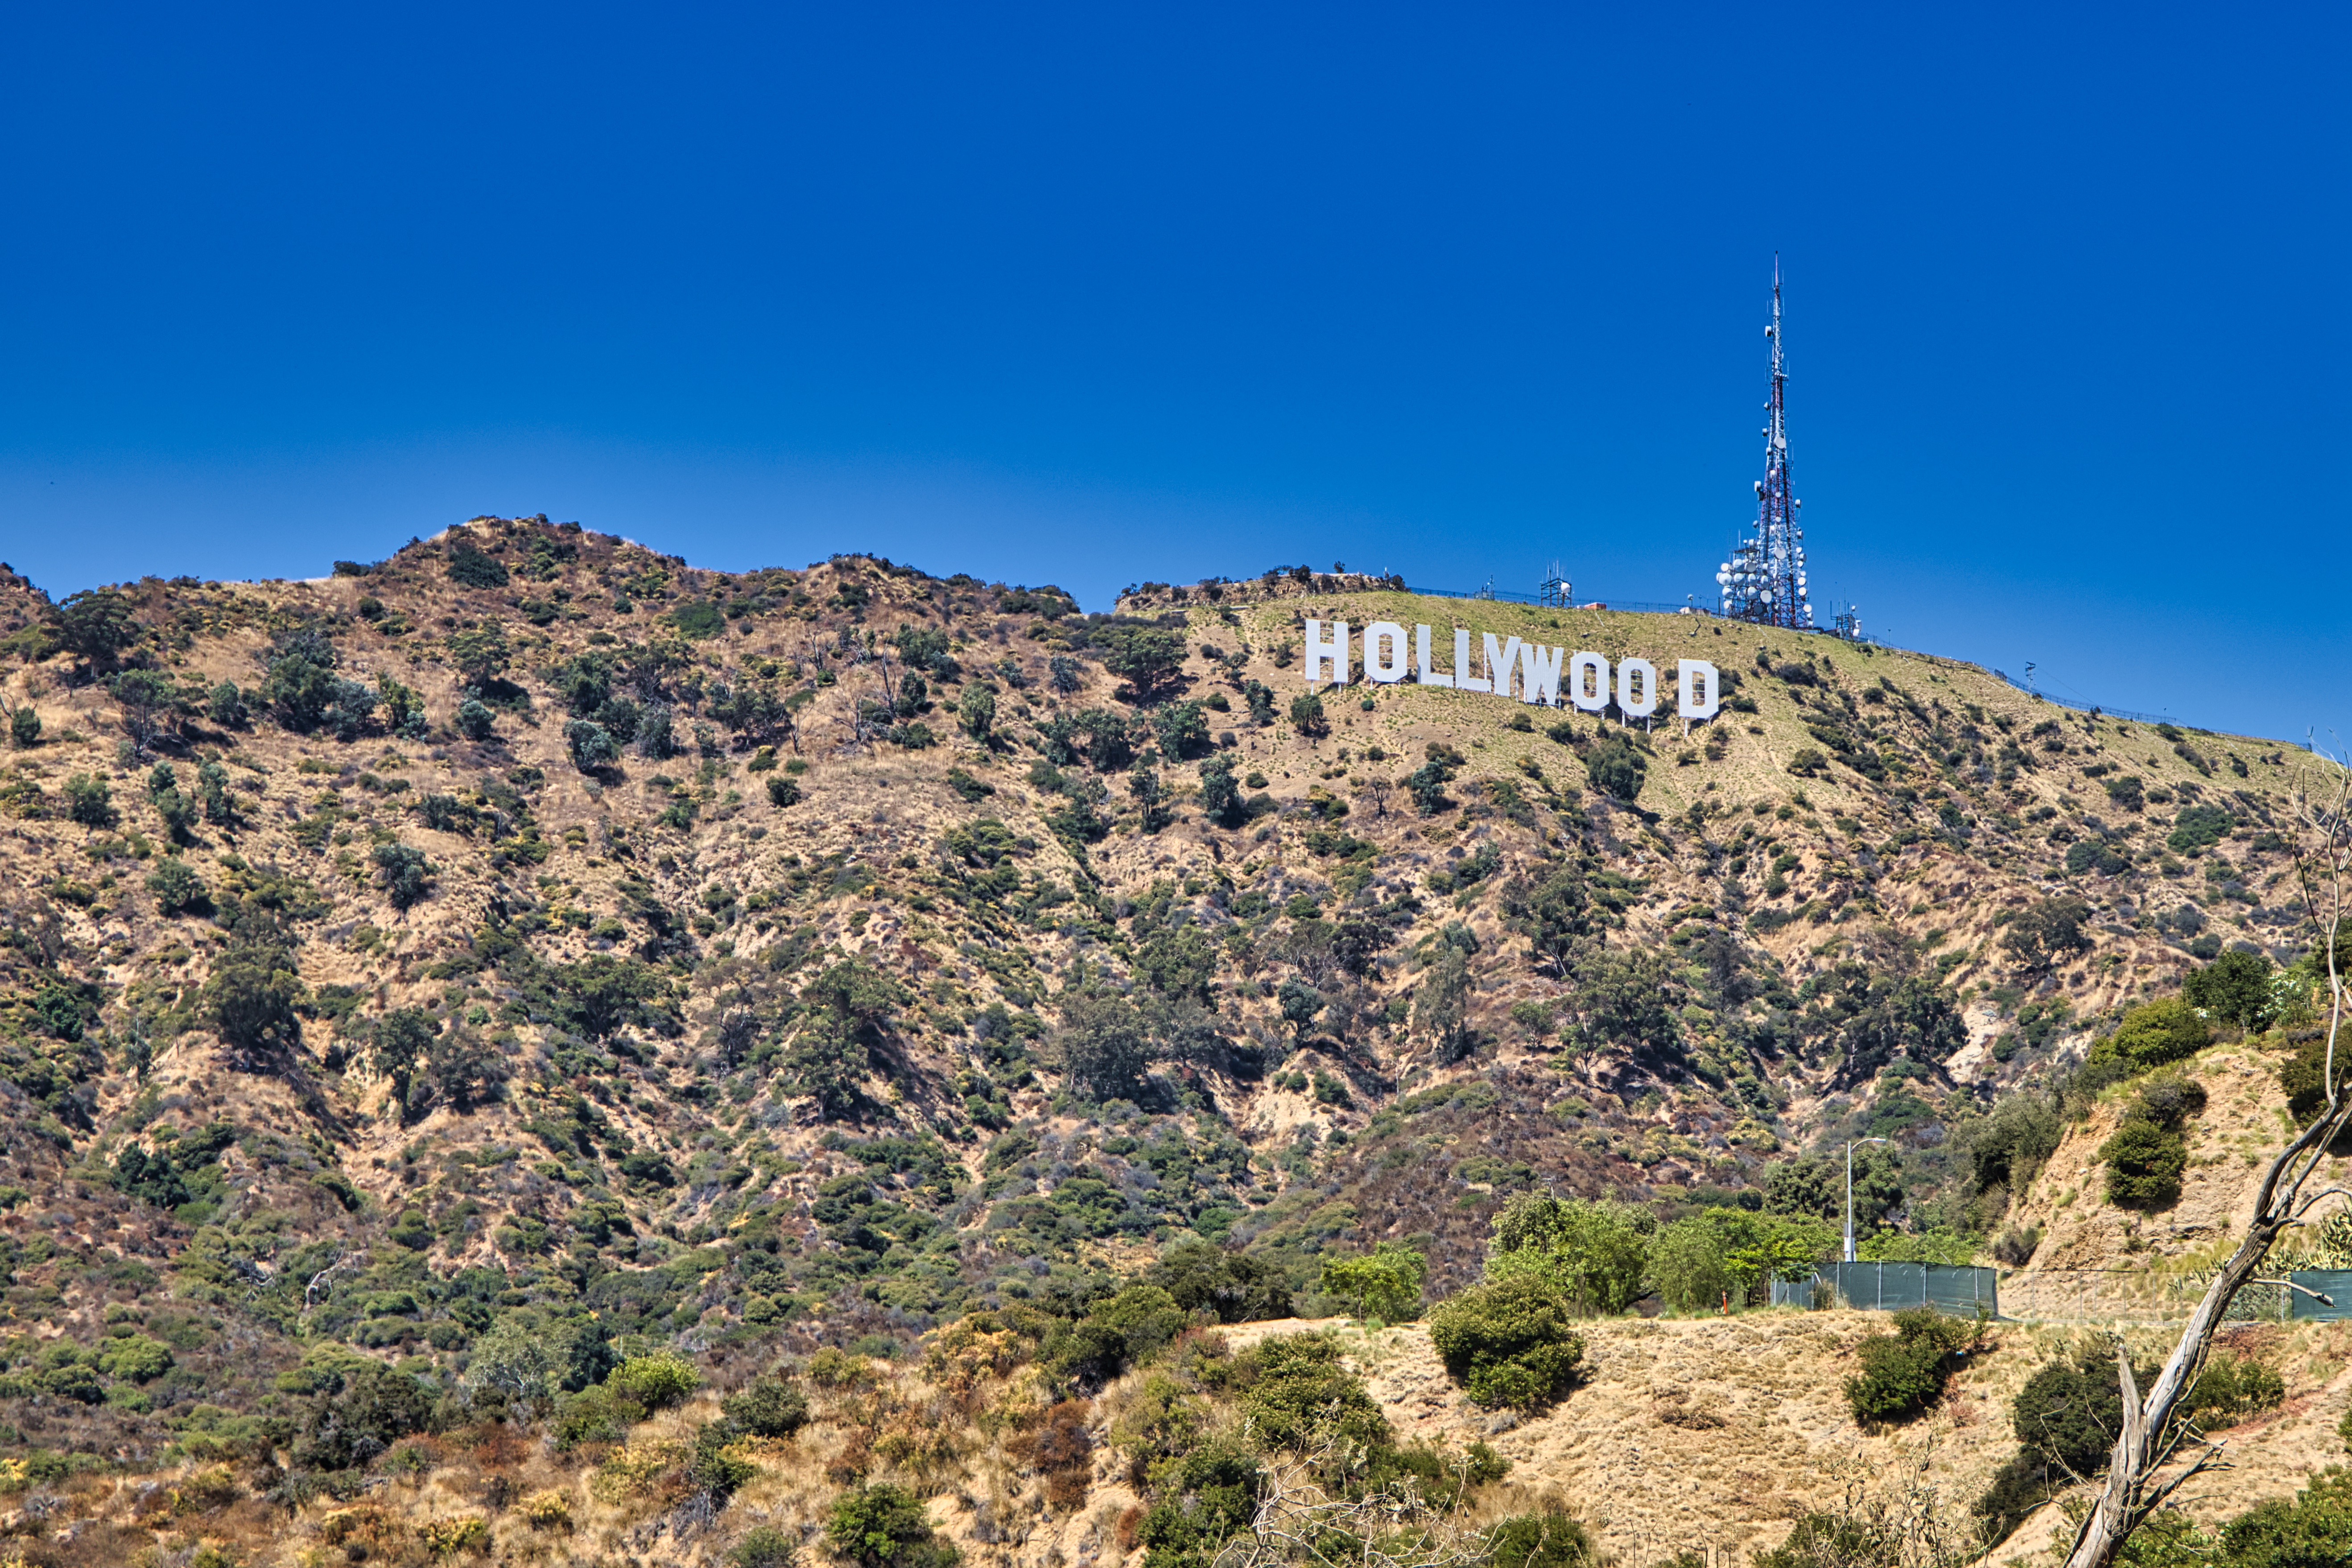 07.08.23 Ein Tag voller Hollywood-Zauber - Von den Universal Studios bis zum Santa Monica Pier